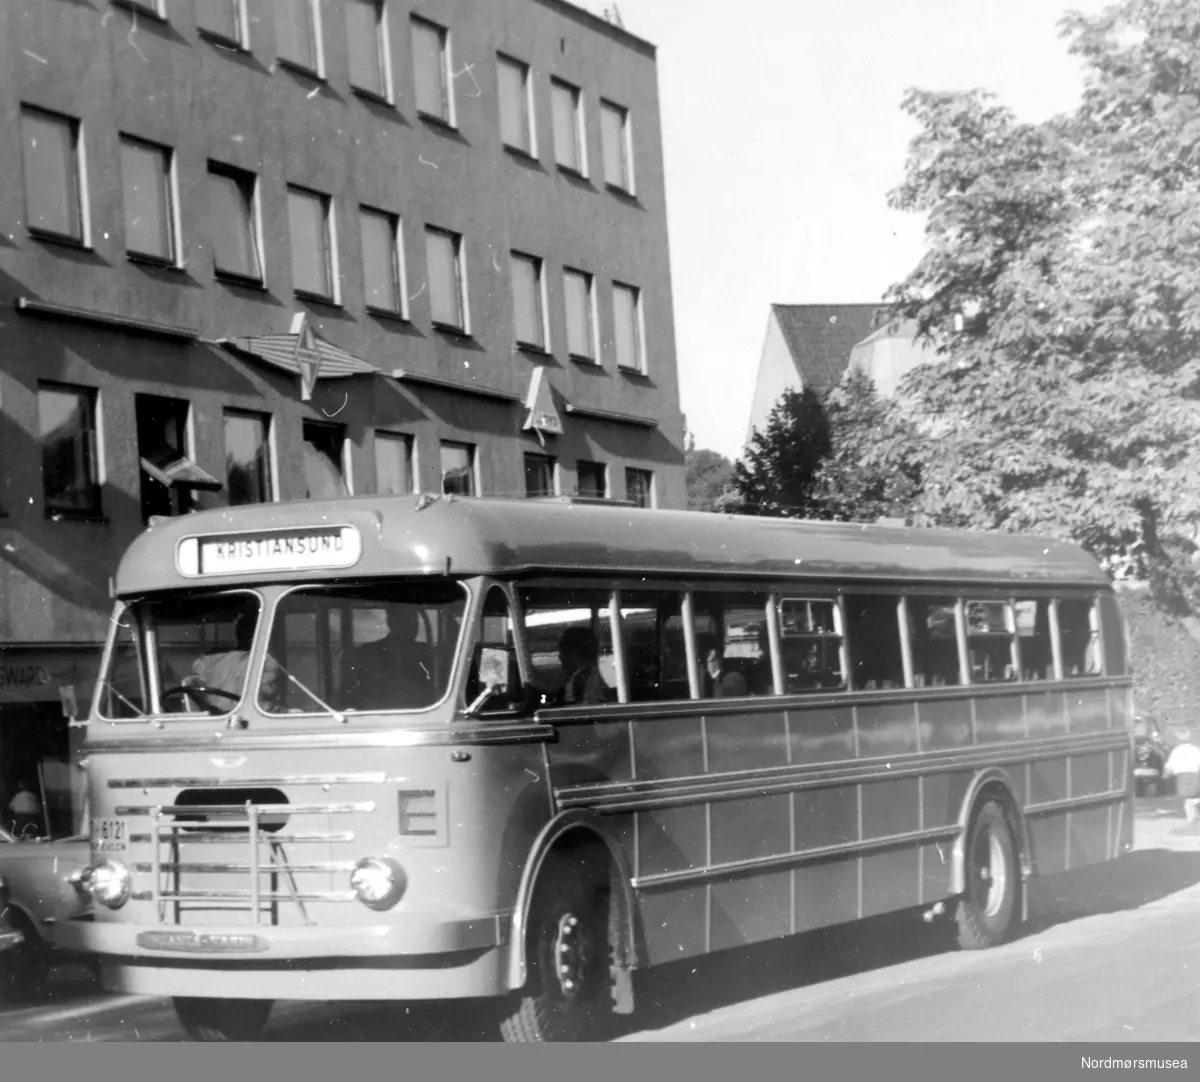 Bussen er registrert T-6121 og var en Scania-Vabis B71 personbuss med 39 sitteplasser. Karosseriet ble levert av Vestfold Bil og Karosseri (VBK). Bussen er 1956-modell (registrert 11 oktober 1956). Bussen var i bruk til 1970. Det var Kristiansund Frei Billag som hadde bussen i trafikk. Bildet er derfor tidligst fra høsten 1956. (Info: Sveinung Berild - 15.10.2016)  en av de lokale rutebussene i Kristiansund. Her i Trondheim? Fra Nordmøre museums fotosamlinger.